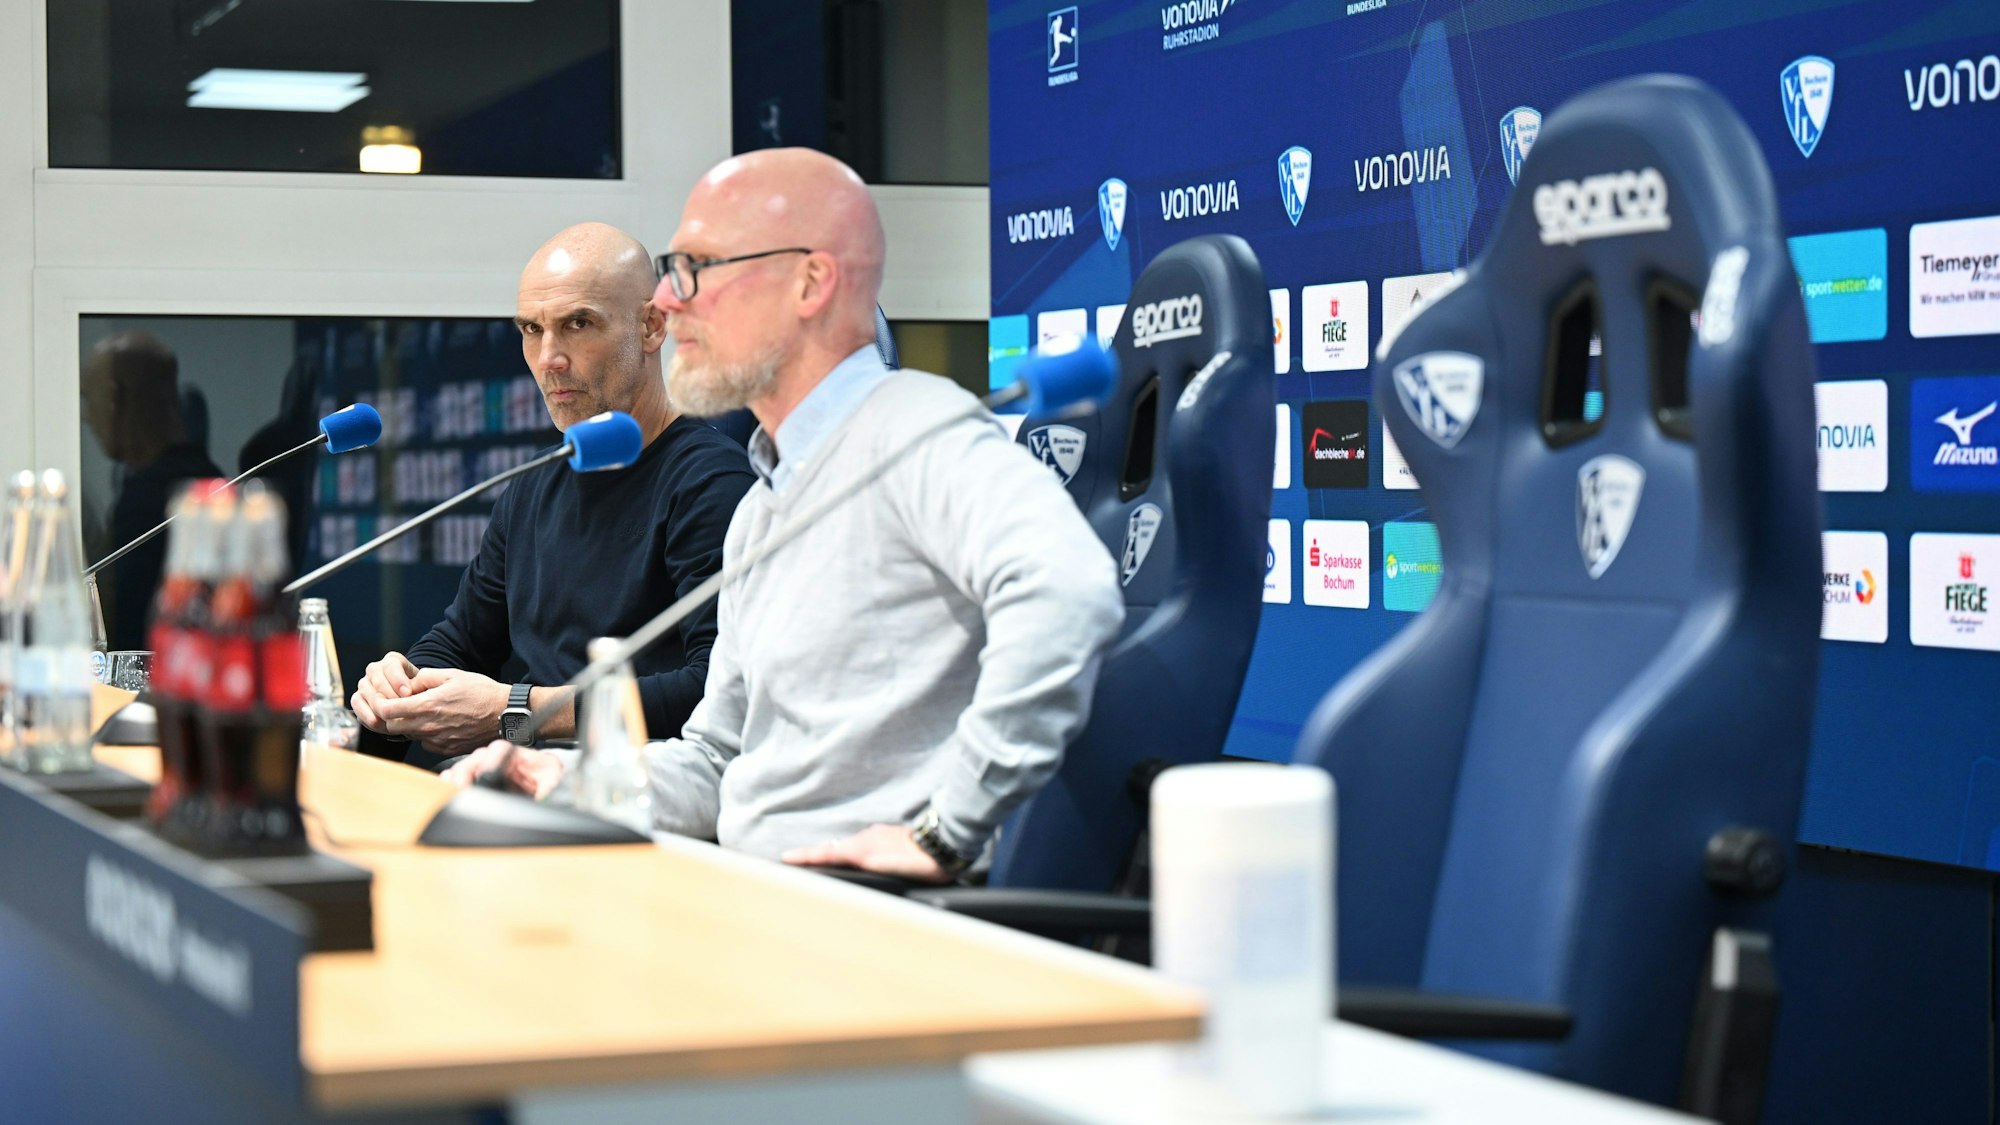 Bochums Trainer Thomas Letsch (l) und Bochums Pressesprecher Jens Fricke sitzen in der Pressekonferenz nach dem Spiel, der rechte Platz von Münchens Cheftrainer Tuchel ist leer.